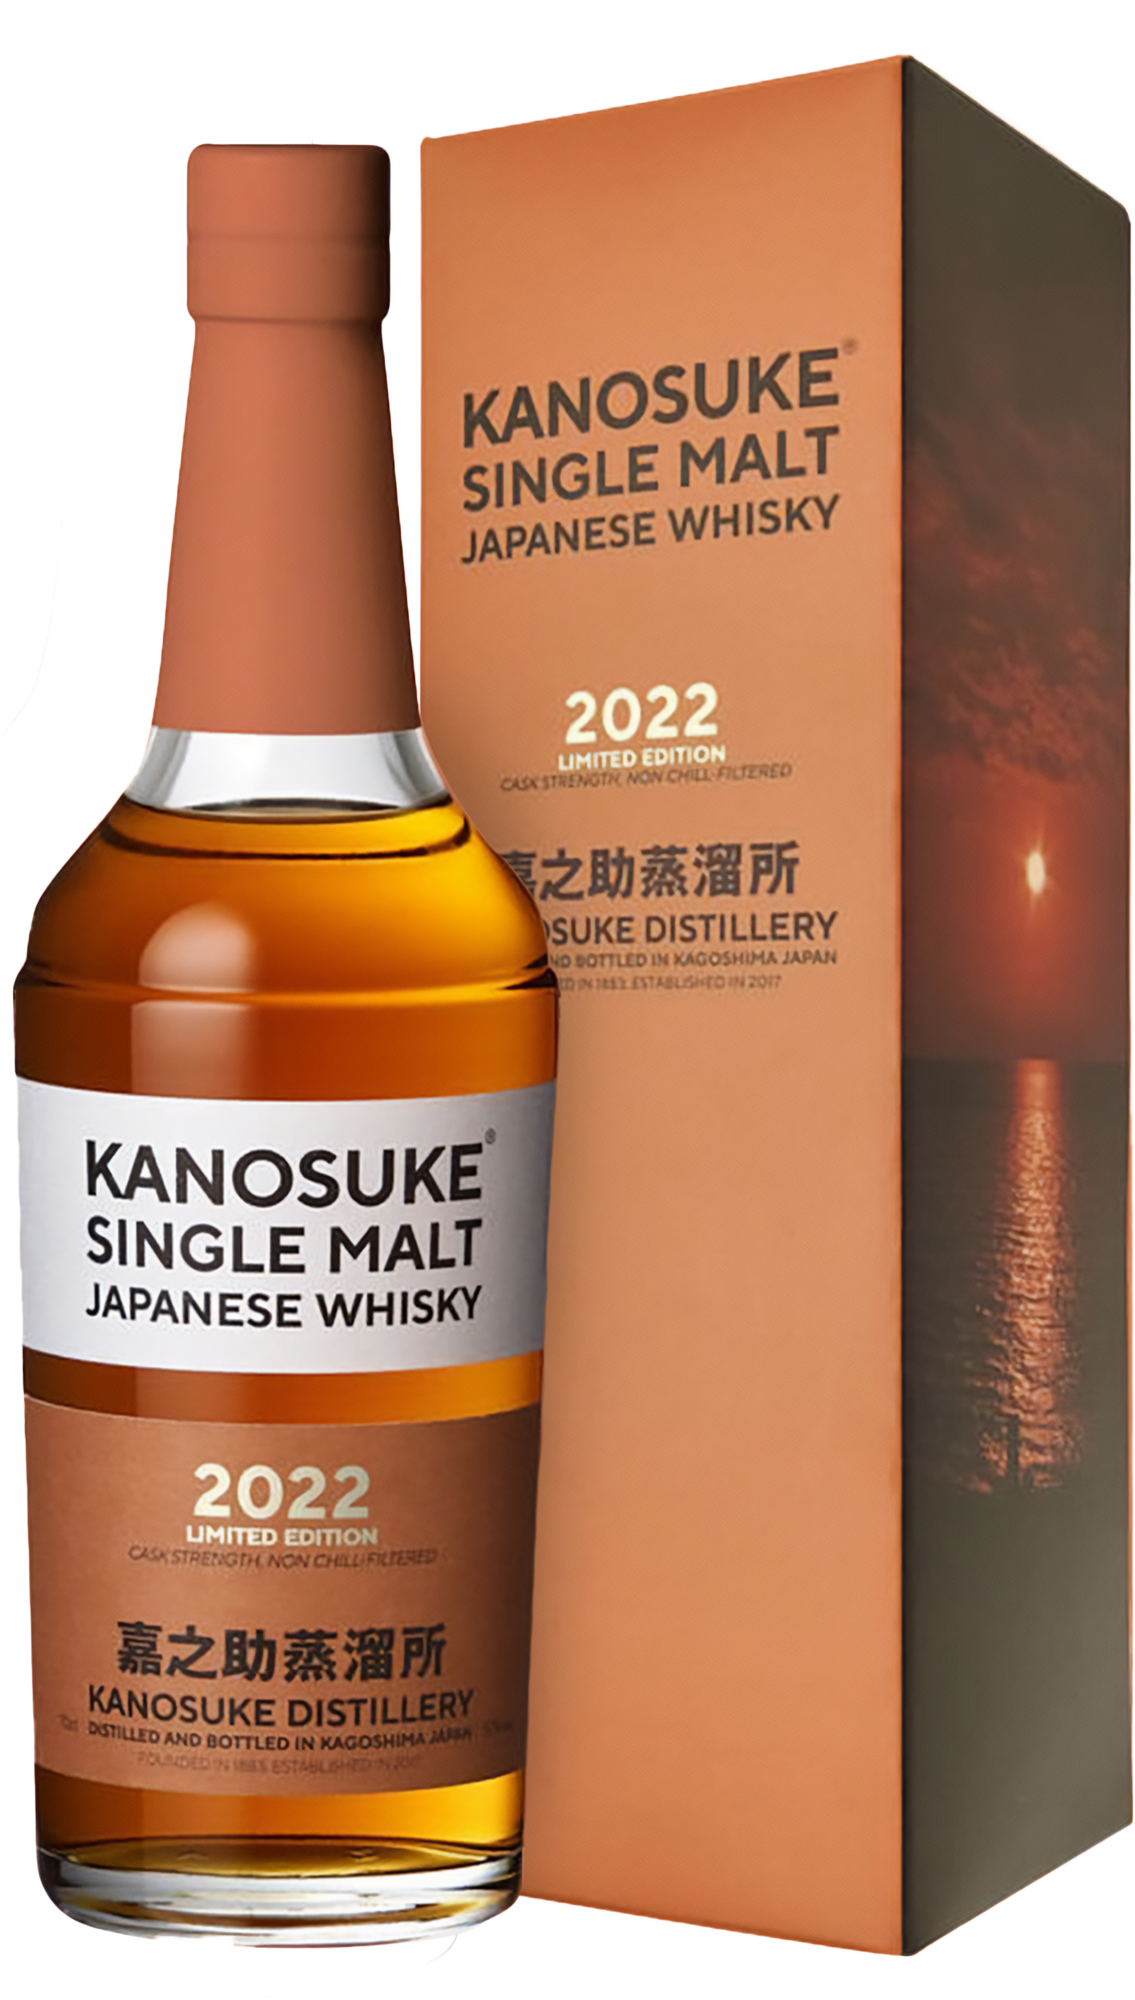 Kanosuke Limited Edition Single Malt Japanese Whisky 2022